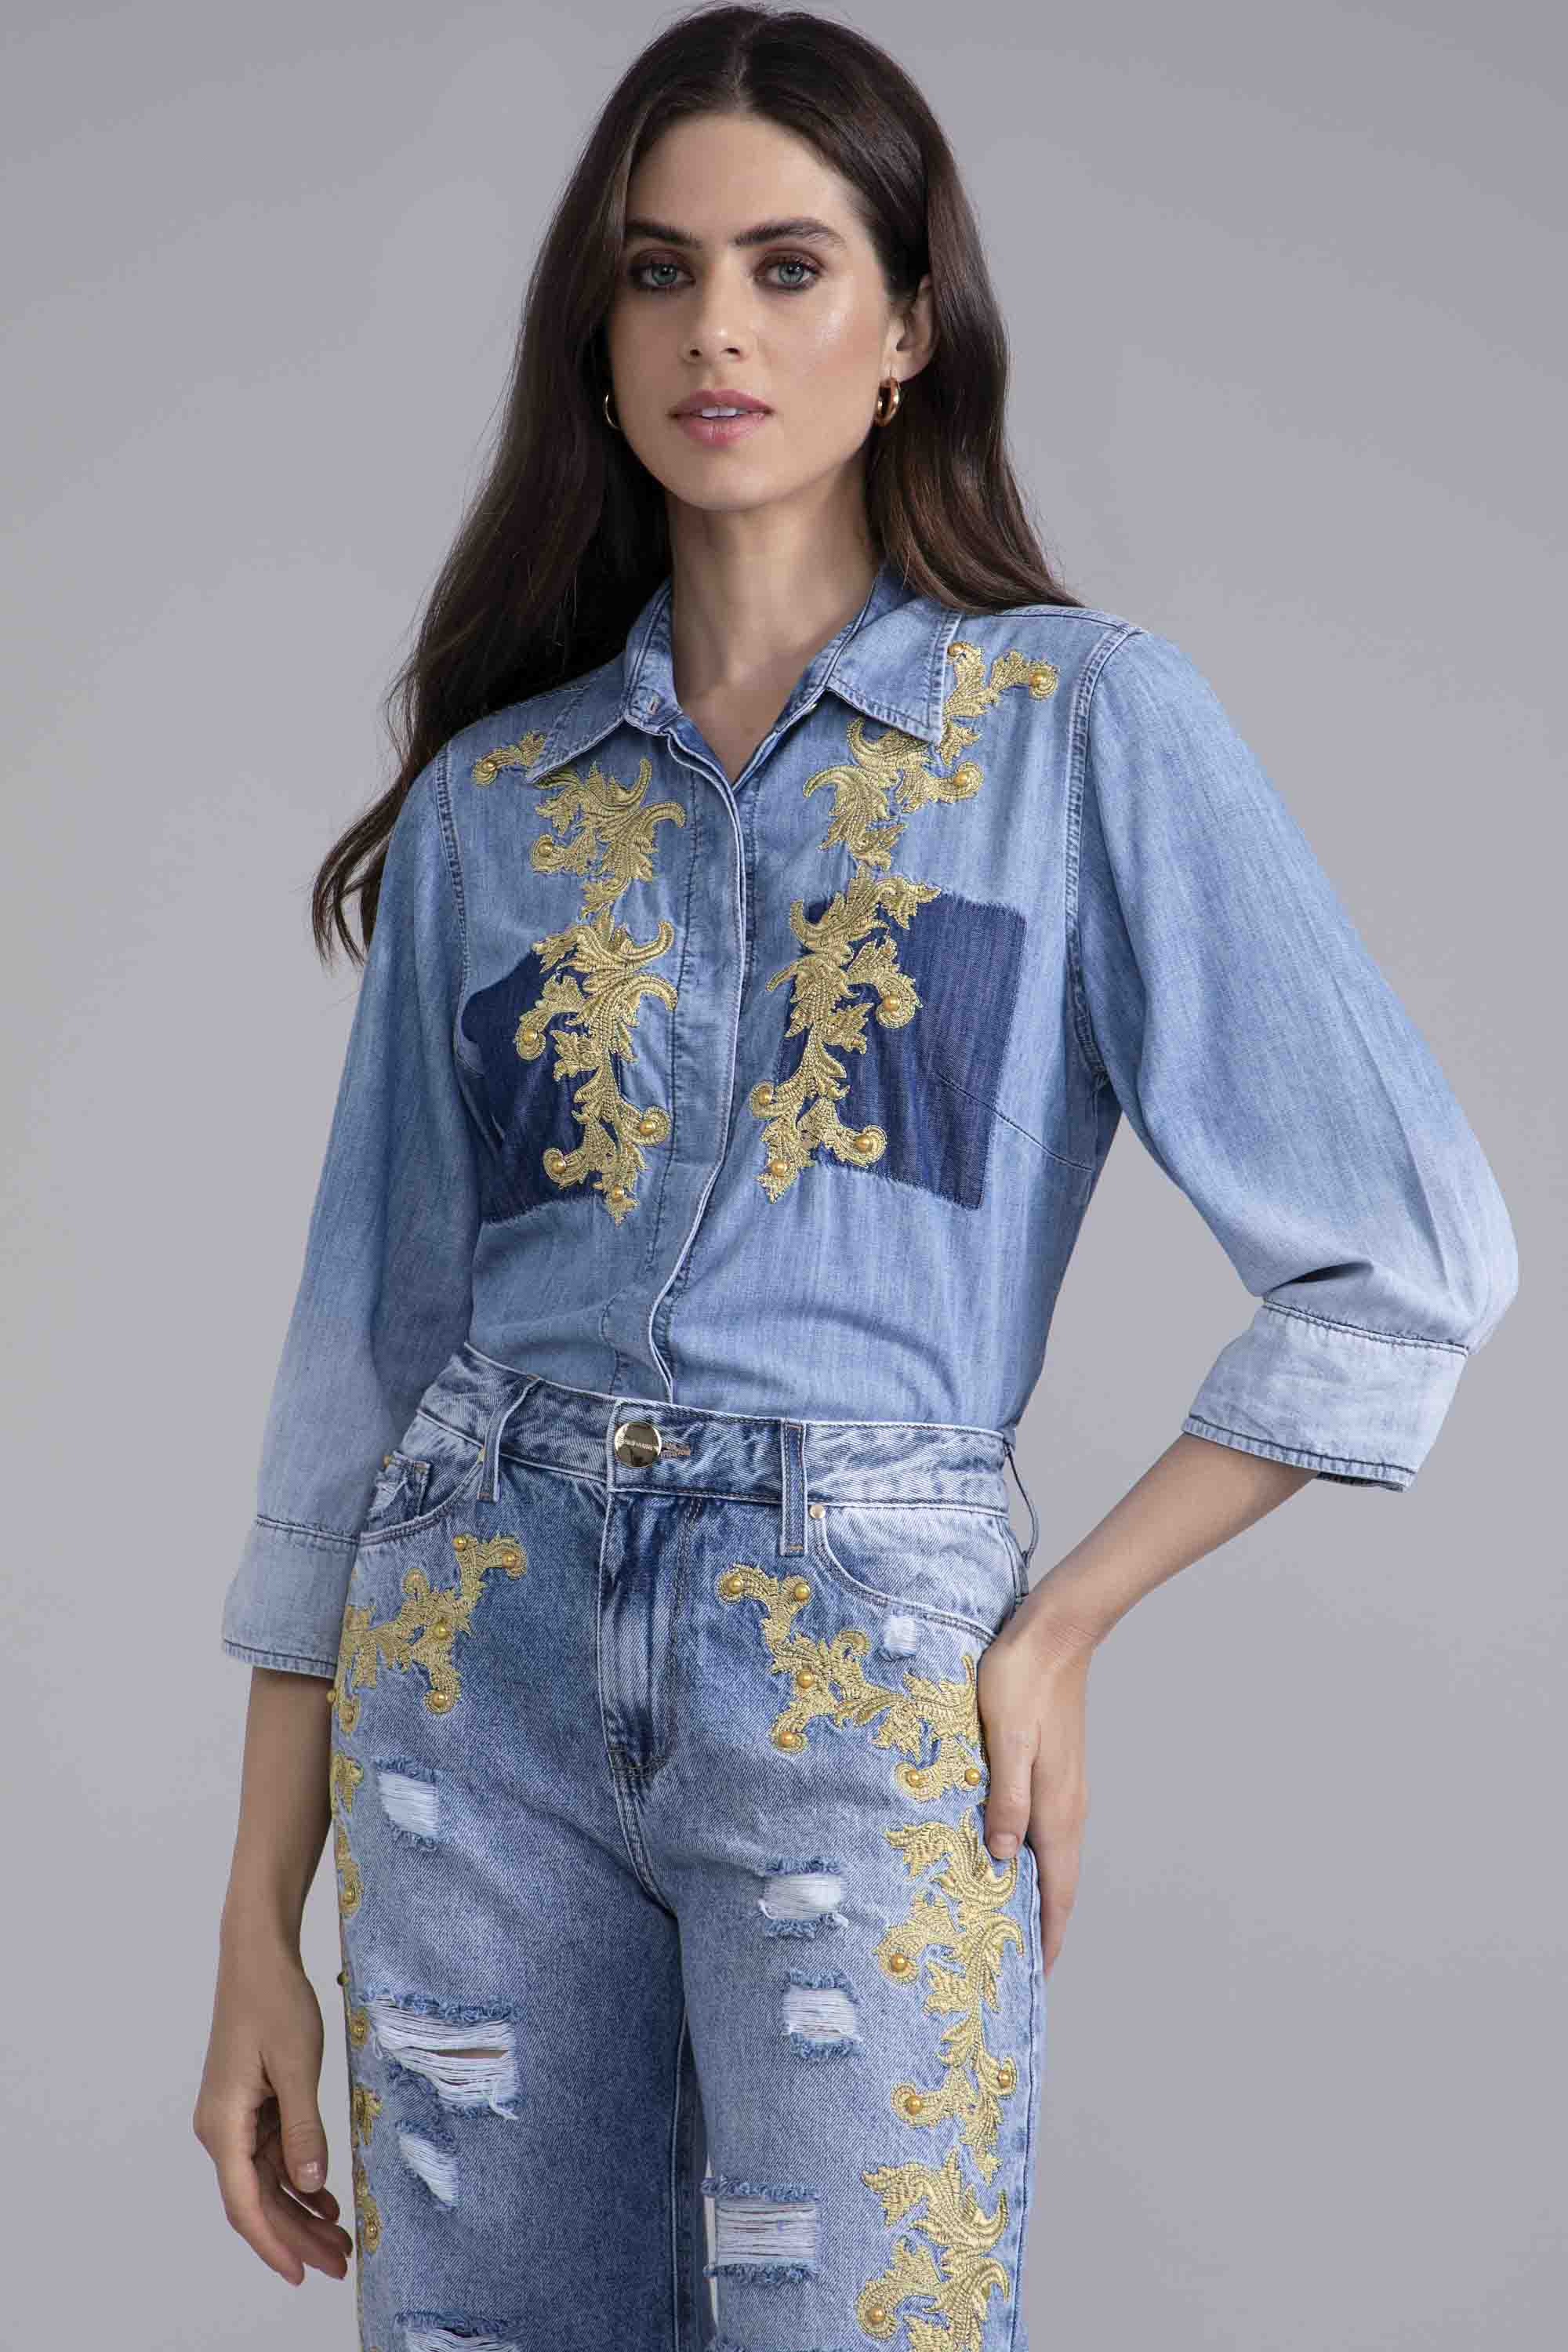 Camisa manga 3/4 tons de jeans, blusa feminina, moda social, moda  evangelica - R$ 65.99, cor Cinza #96261, compre agora